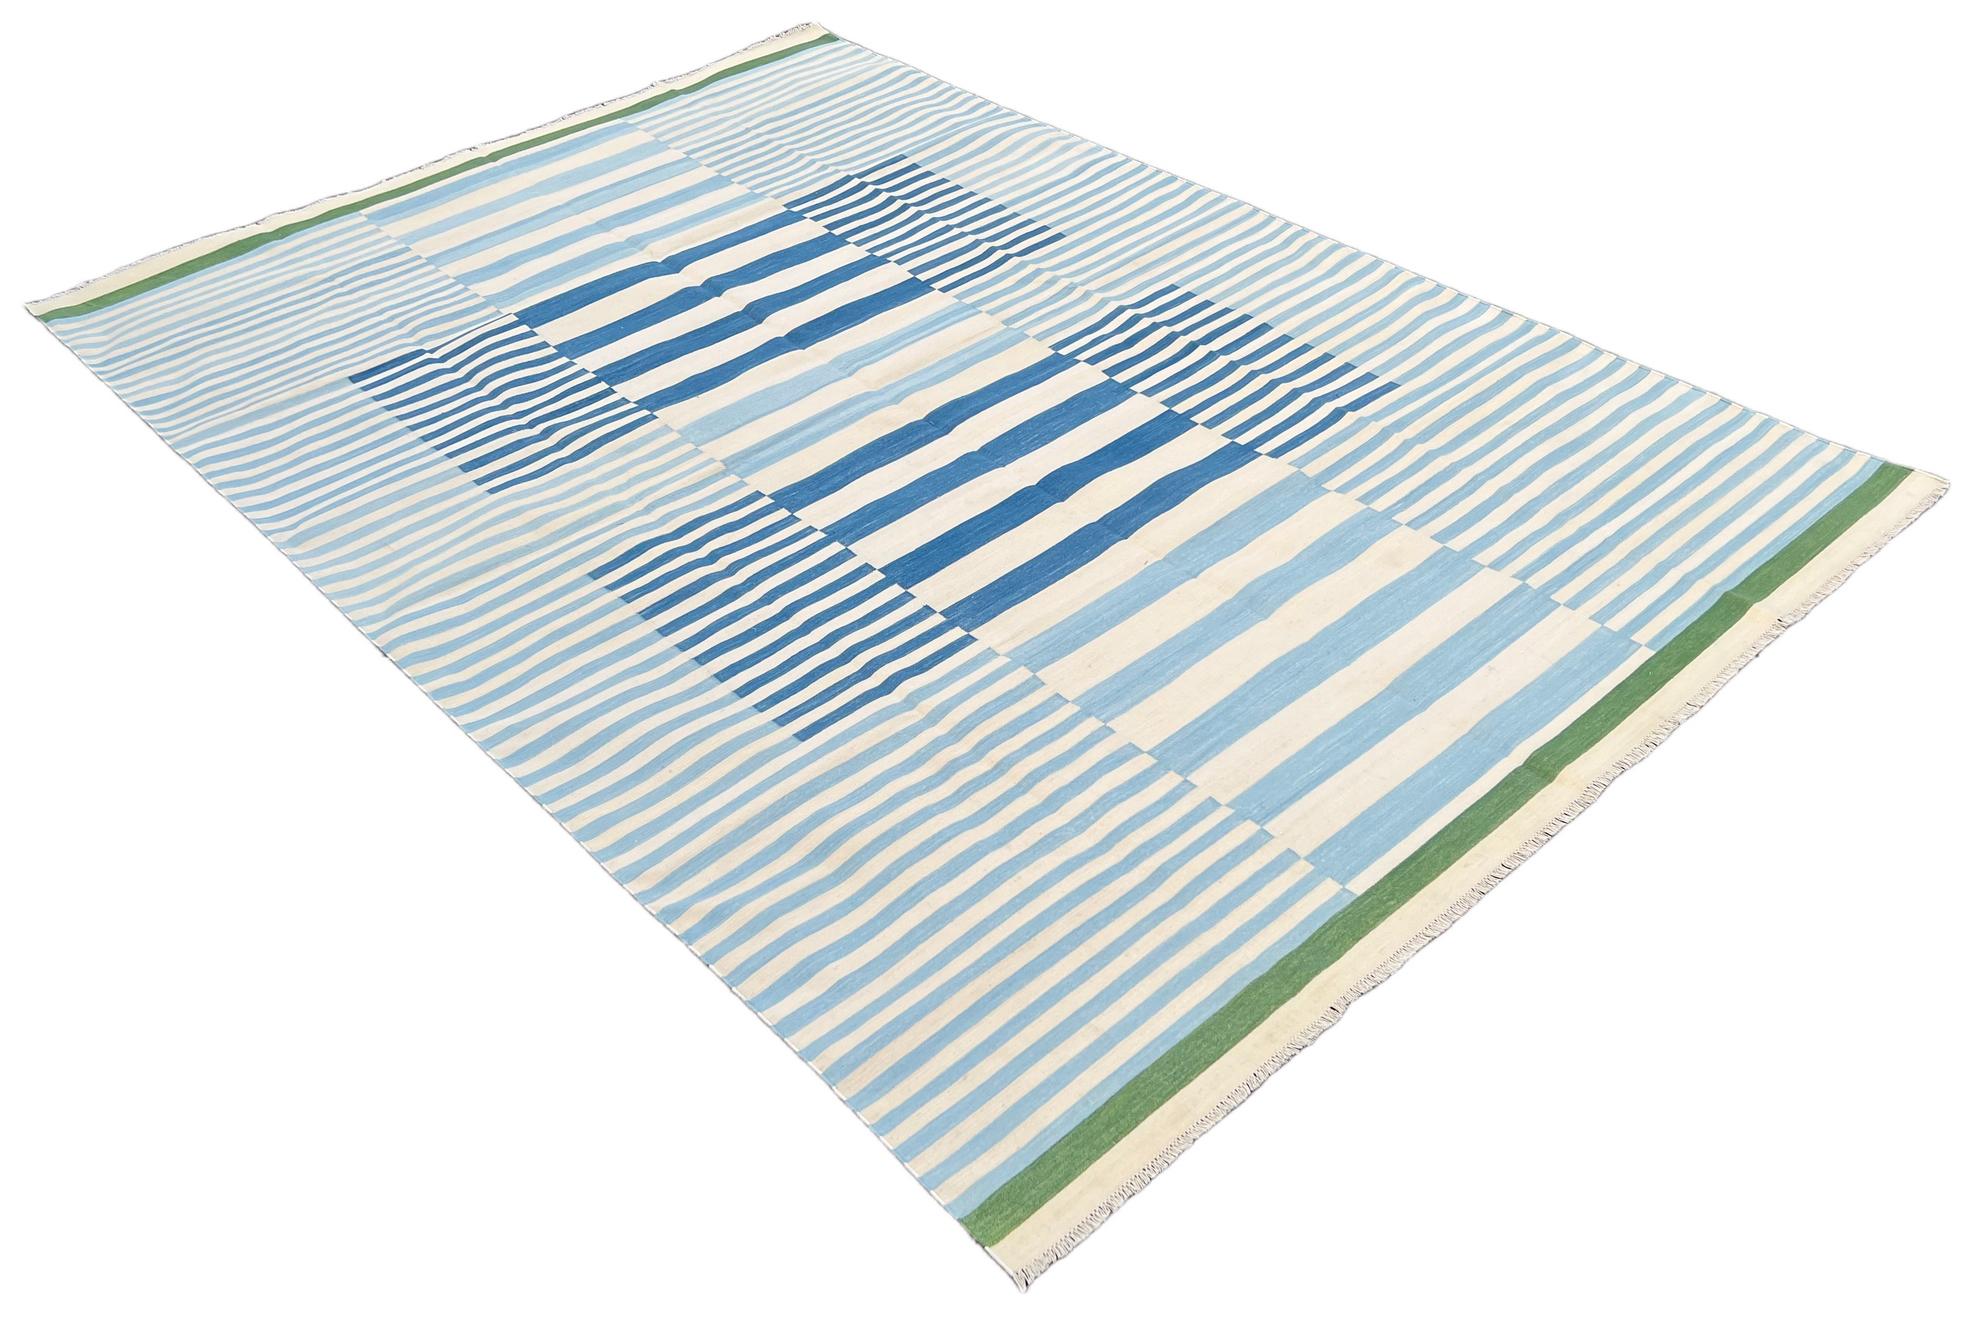 Blau, weiß und grün gestreifter indischer Dhurrie-Teppich aus pflanzlich gefärbter Baumwolle-8'x10' 
Diese speziellen flachgewebten Dhurries werden aus 15-fachem Garn aus 100% Baumwolle handgewebt. Aufgrund der speziellen Fertigungstechniken, die